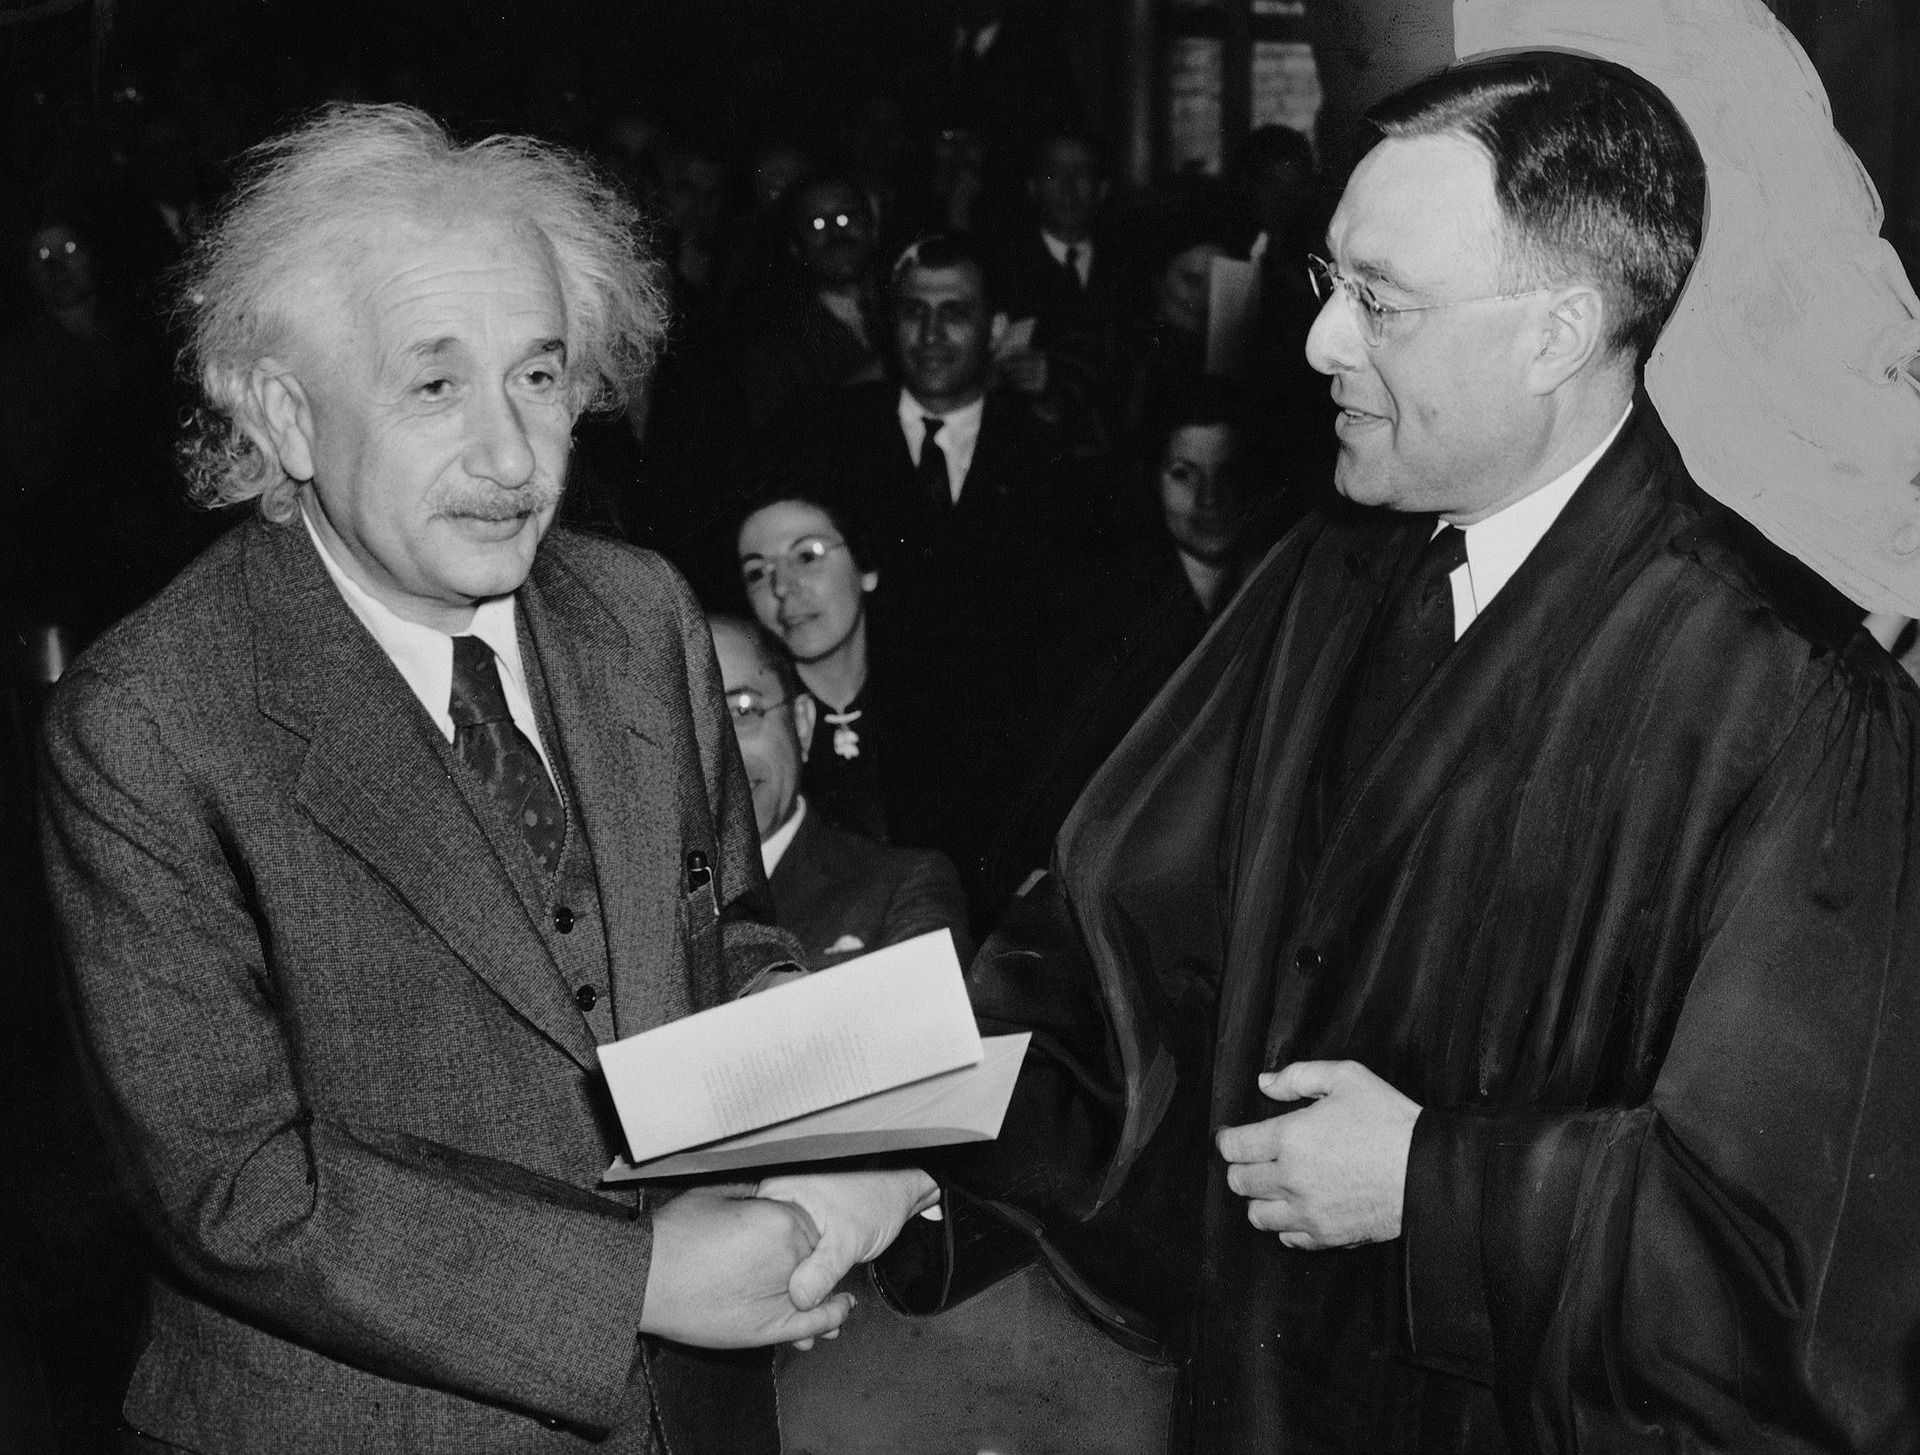 Albert Einstein shaking hands with man